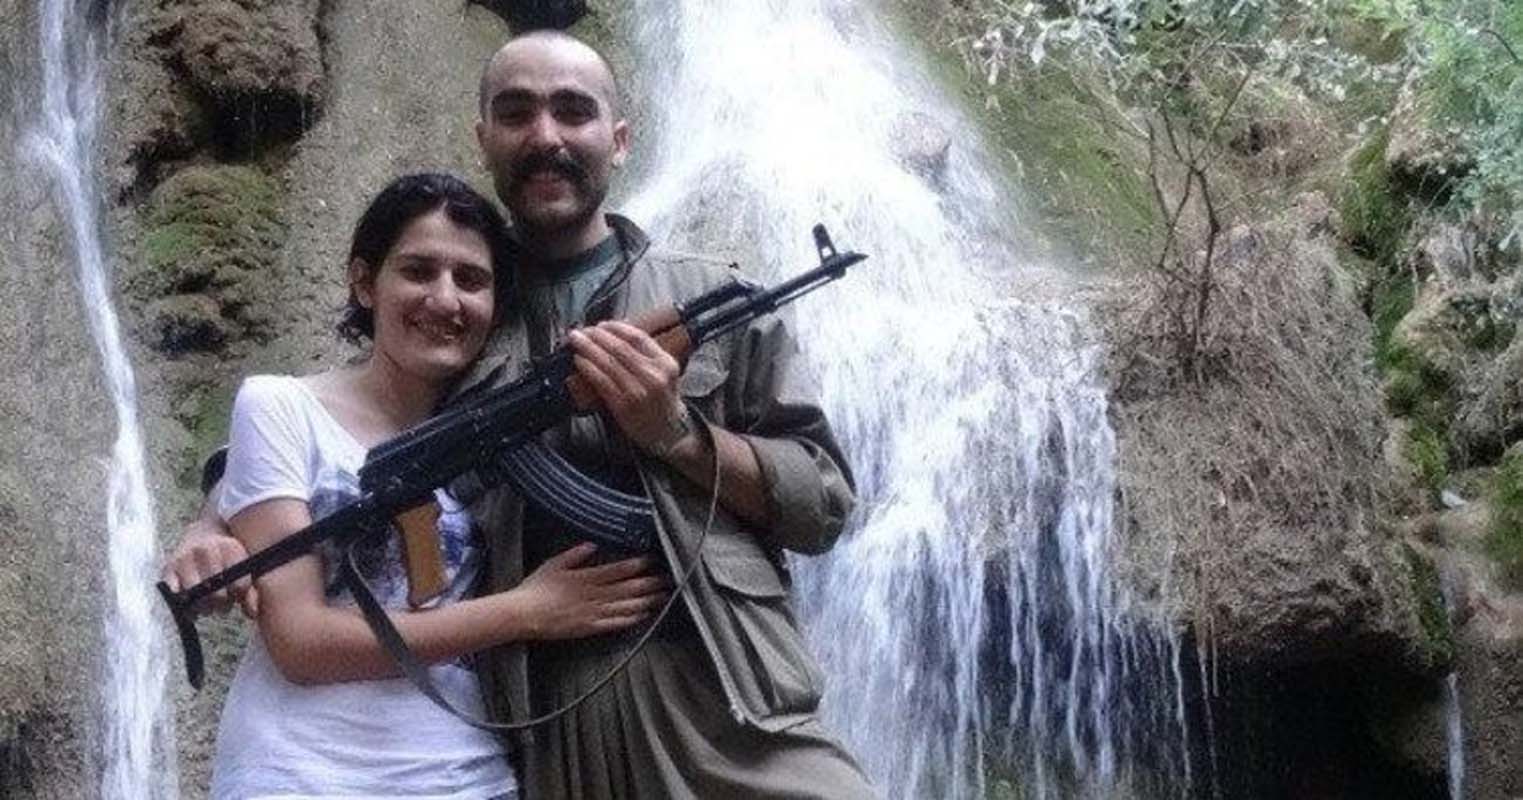 Son Dakika | Öldürülen PKK'lı teröristle fotoğrafları ortaya çıkmıştı! HDP Diyarbakır Milletvekili Semra Güzel hakkında yakalama kararı çıkarıldı!